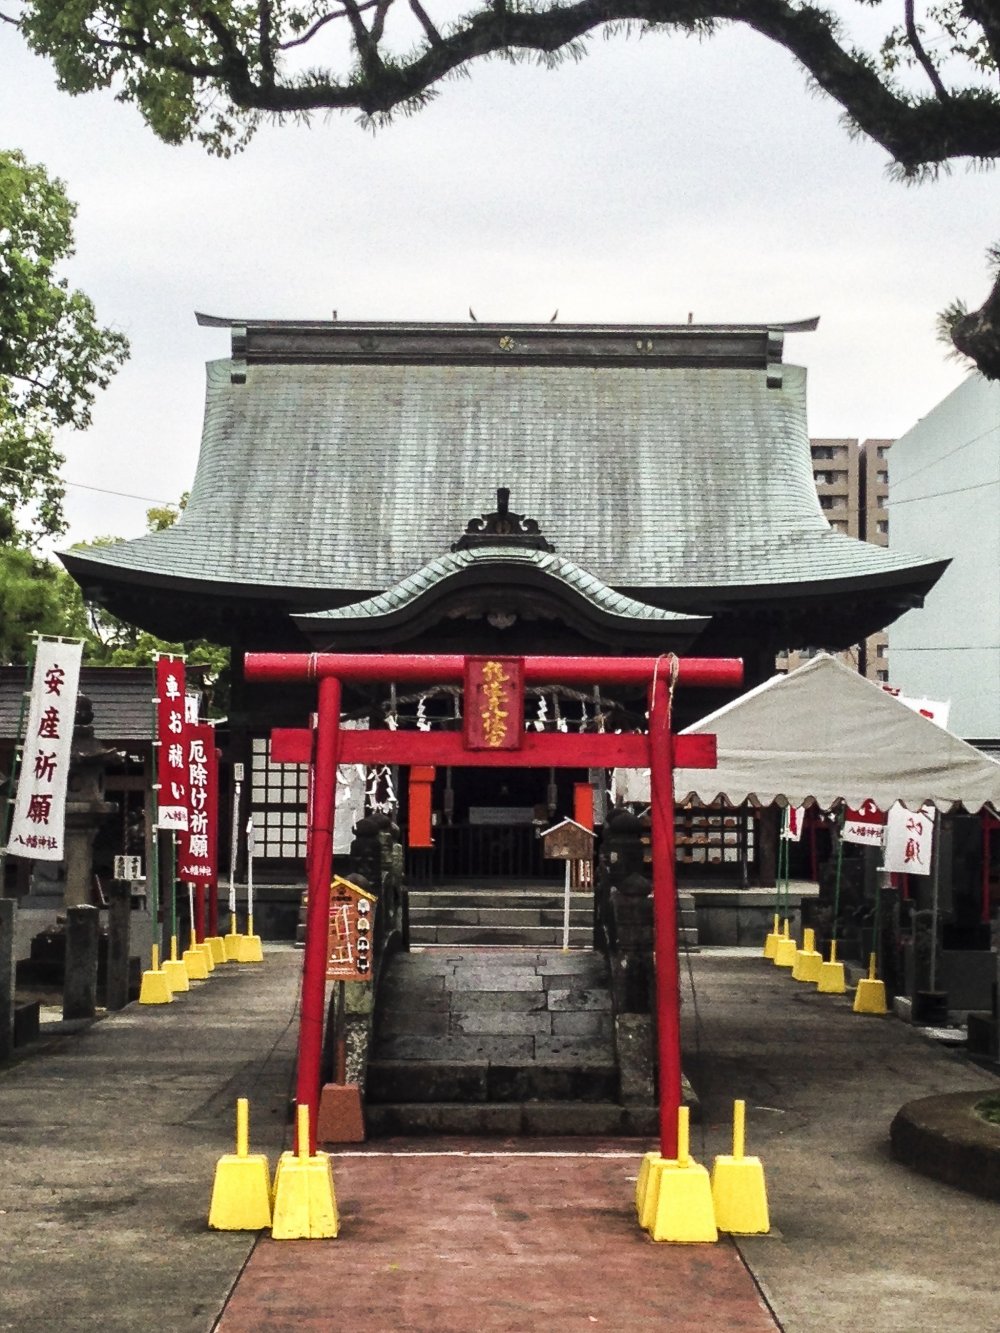 Cổng torii khác nhỏ hơn và đỏ chói đứng trước một cây cầu đá đặc biệt